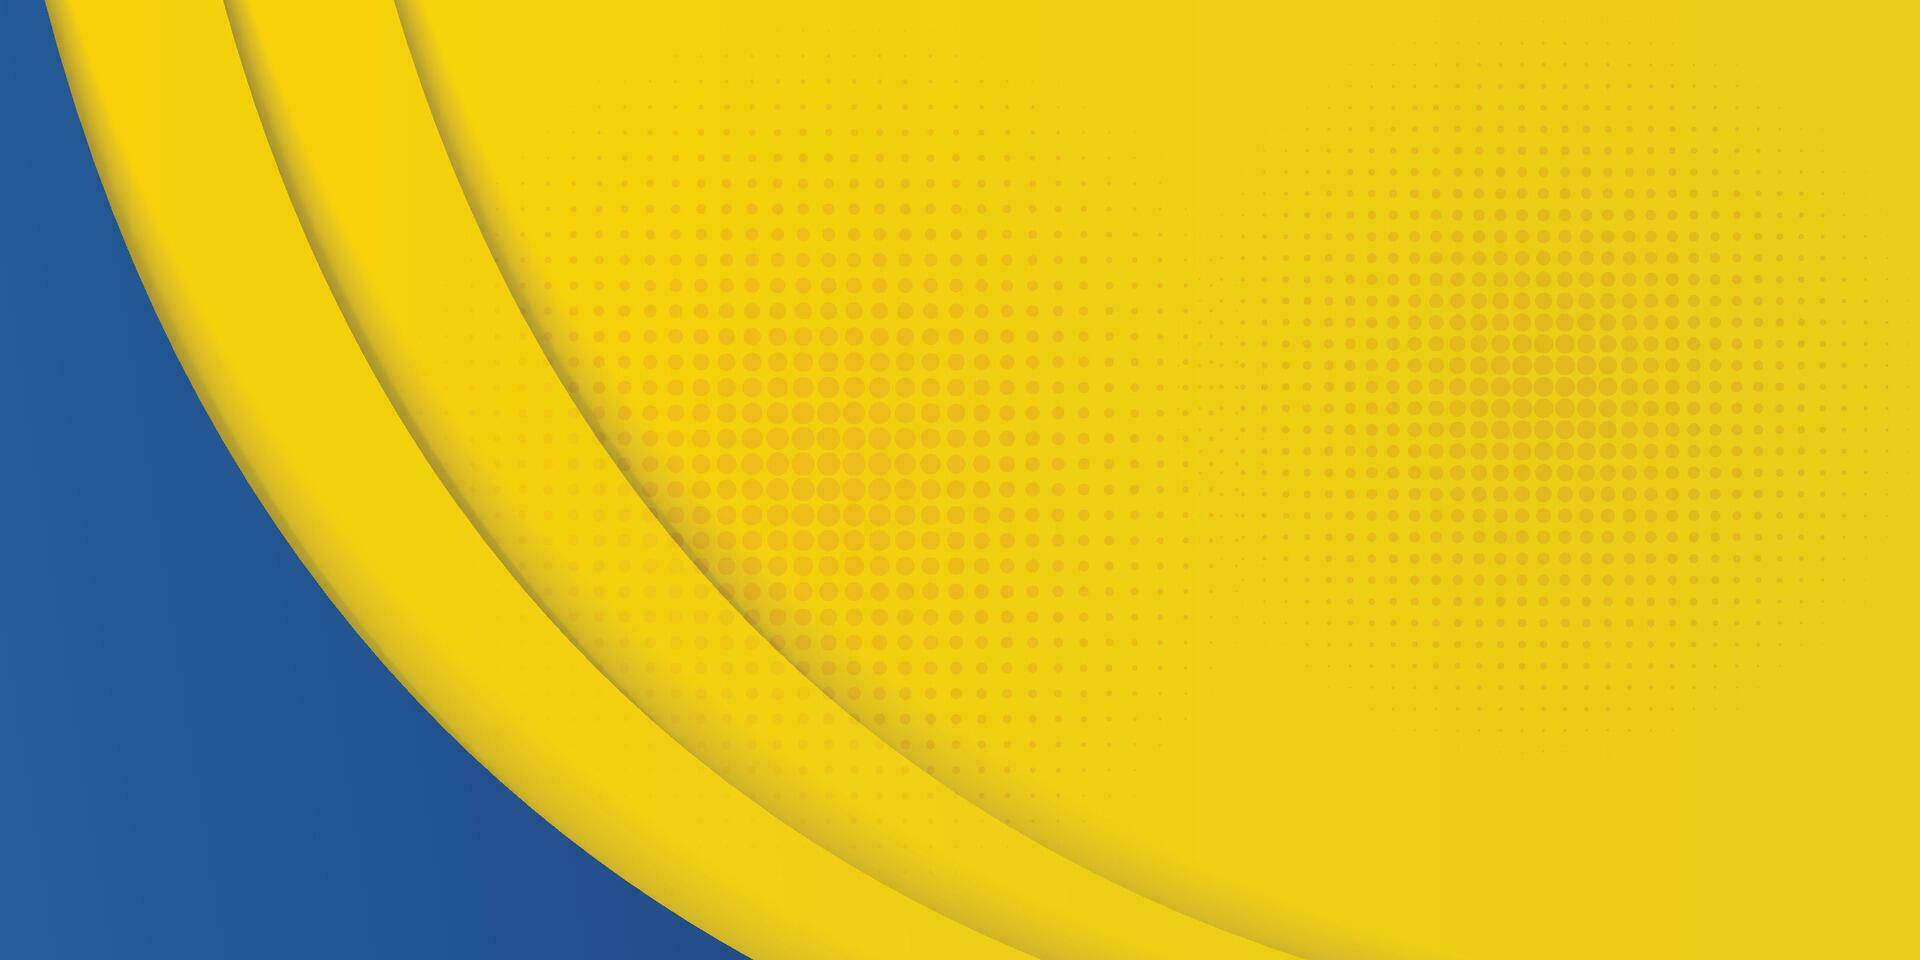 abstrakt gul och blå geometrisk kurva överlappning lager bakgrund med halvton prickar dekoration. modern horisontell baner mall design. kostym för omslag, rubrik, affisch, baner, hemsida, företag vektor